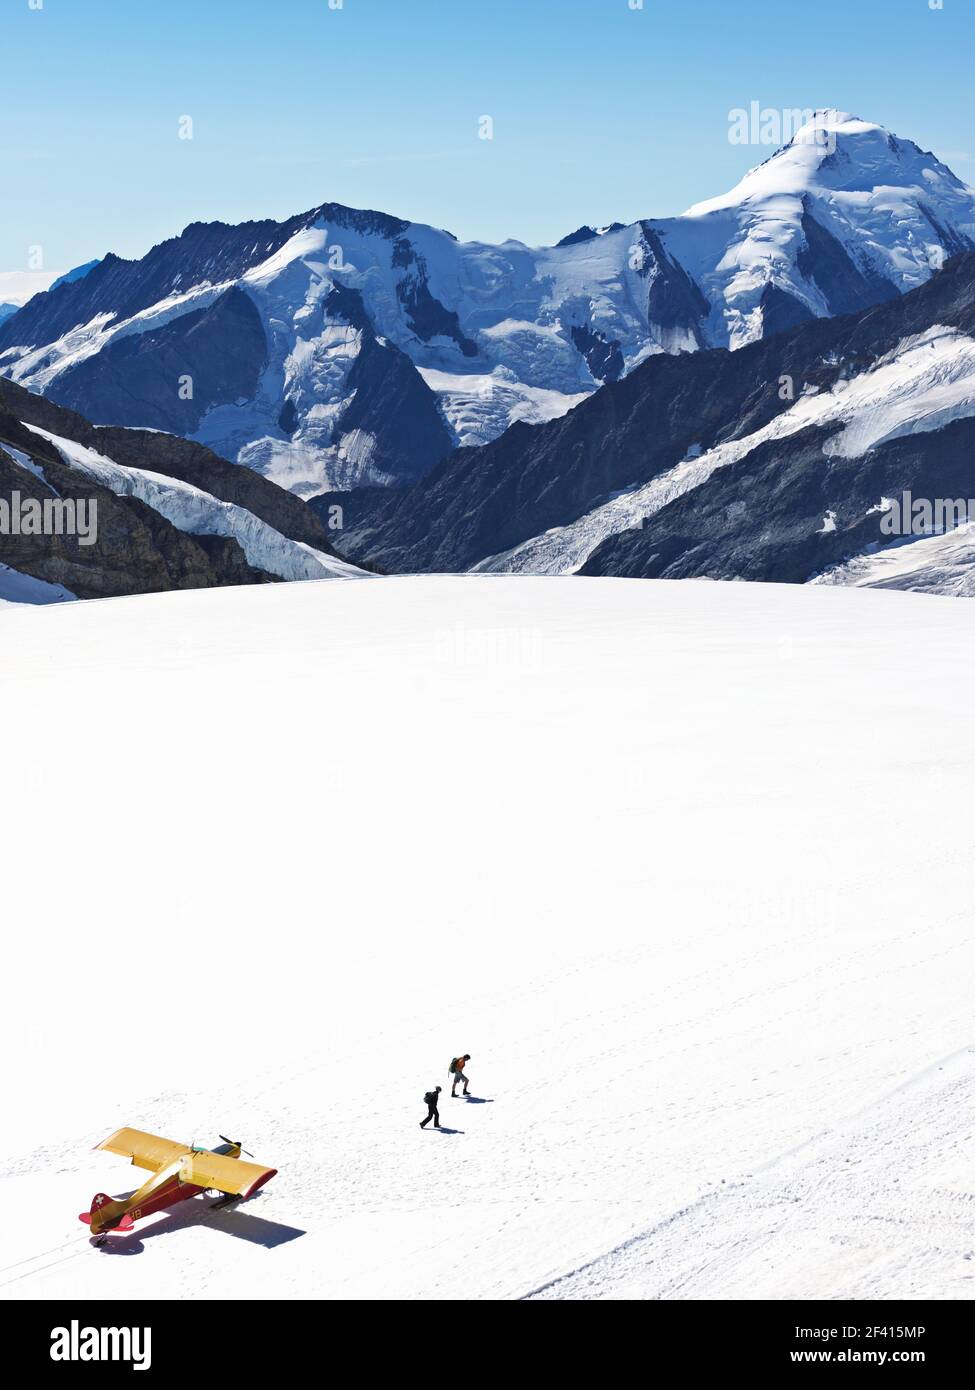 Svizzera Jungfraujoch-Top d'Europa. Aereo sul ghiacciaio con montagne sullo sfondo e due persone a piedi. Il Ghiacciaio del Grande Aletsch, Foto Stock